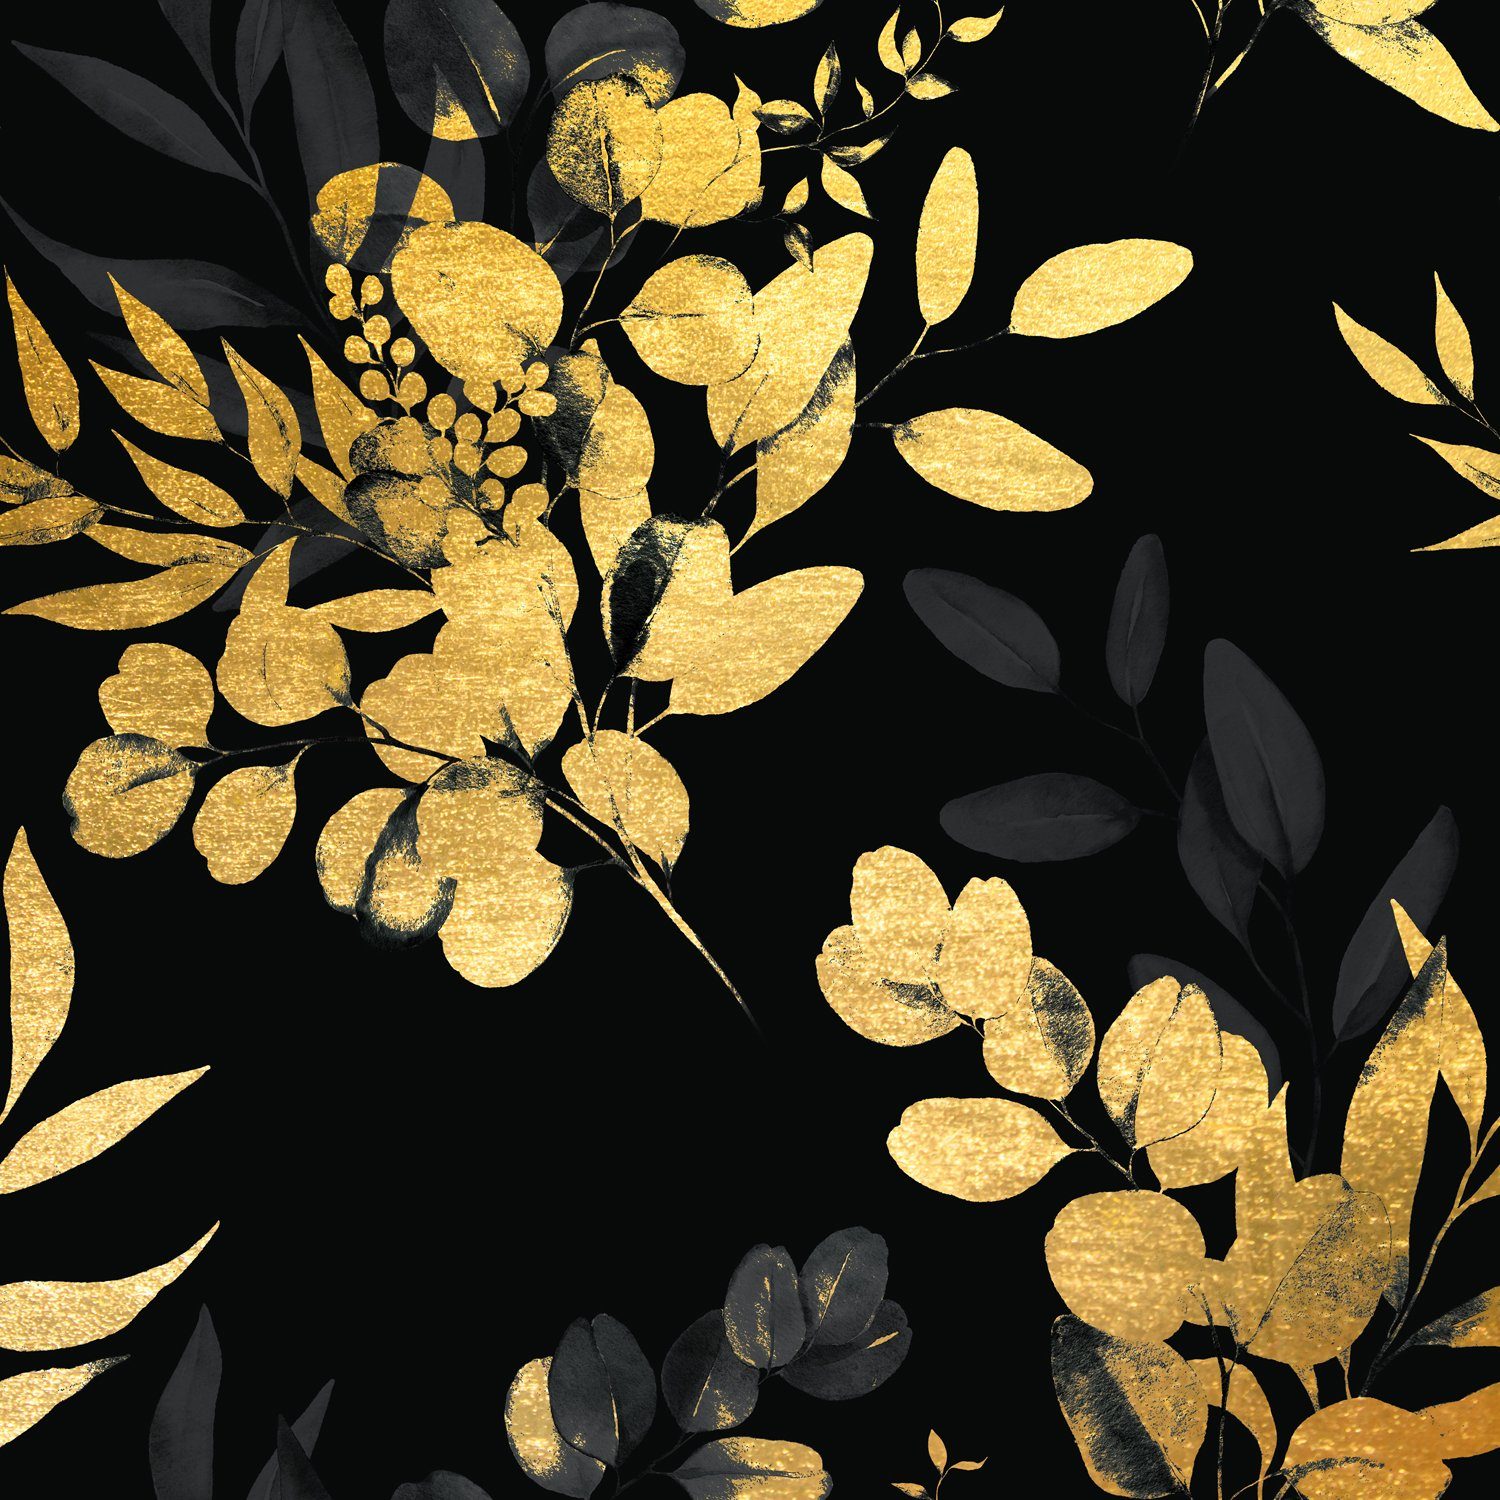 queence Acrylglasbild Pflanzen - Blätter - Leaves - Acrylbilder mit Blattgold veredelt, Pflanzen (1 St), Verschieden Größen, Goldveredelung, Handgearbeitet, Gerahmt, Edel